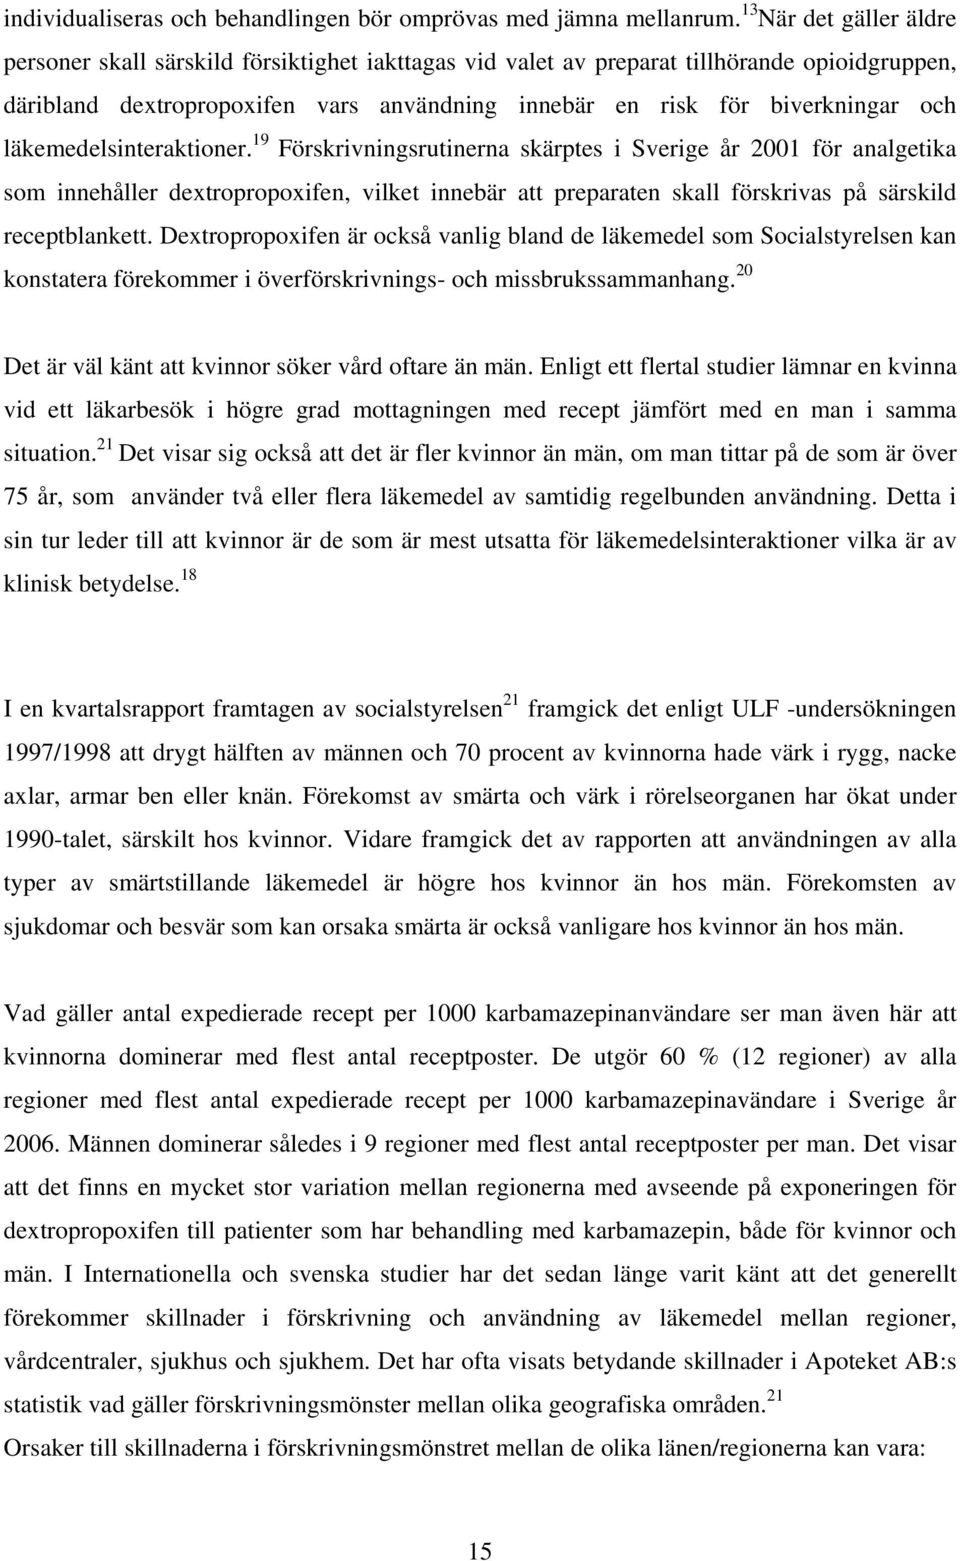 läkemedelsinteraktioner. 19 Förskrivningsrutinerna skärptes i Sverige år 2001 för analgetika som innehåller dextropropoxifen, vilket innebär att preparaten skall förskrivas på särskild receptblankett.